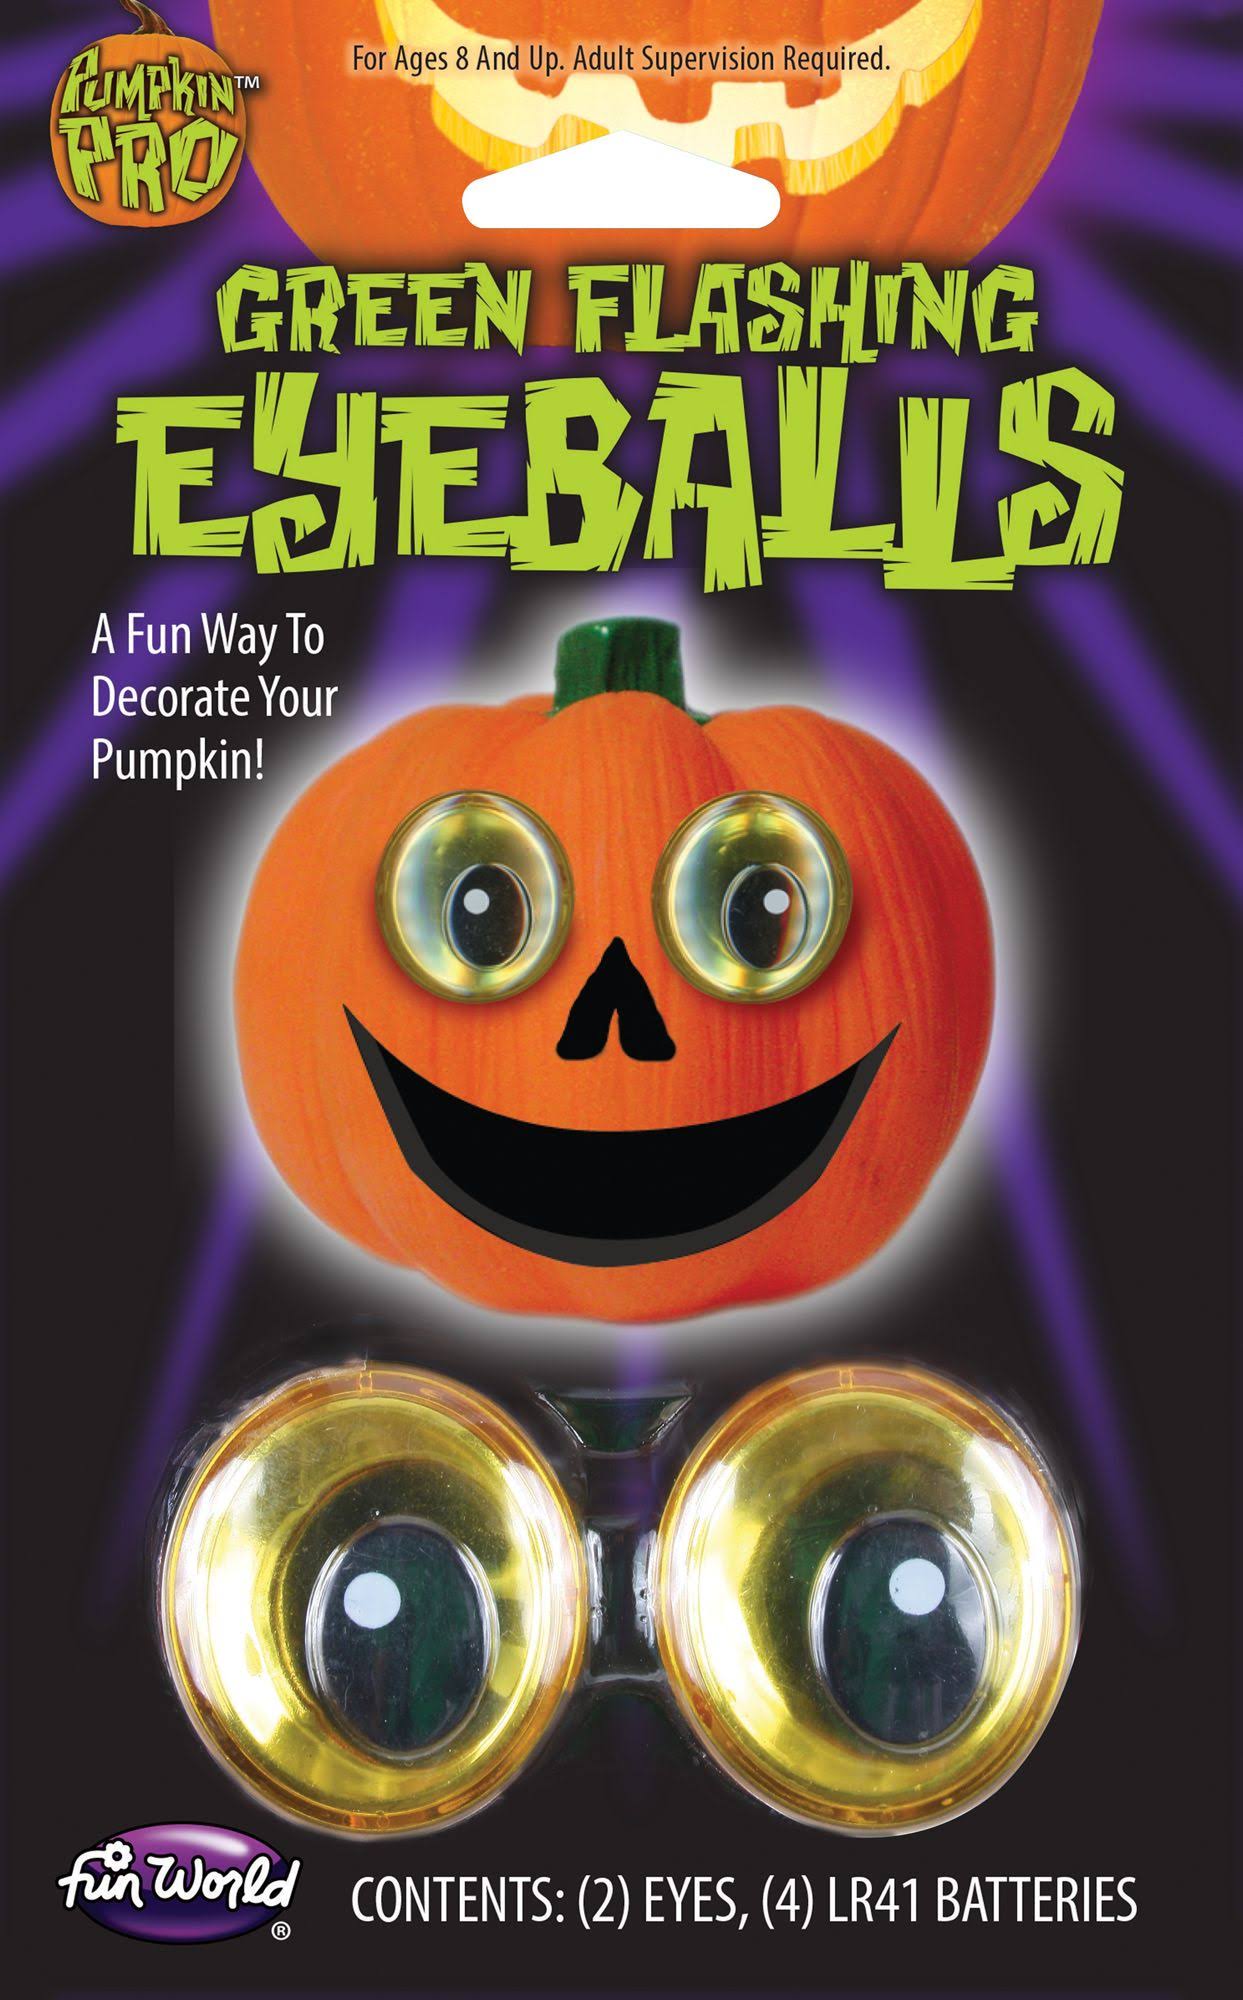 FunWorld Pumpkin Flashing Creepy Eyeballs Decorating Kit